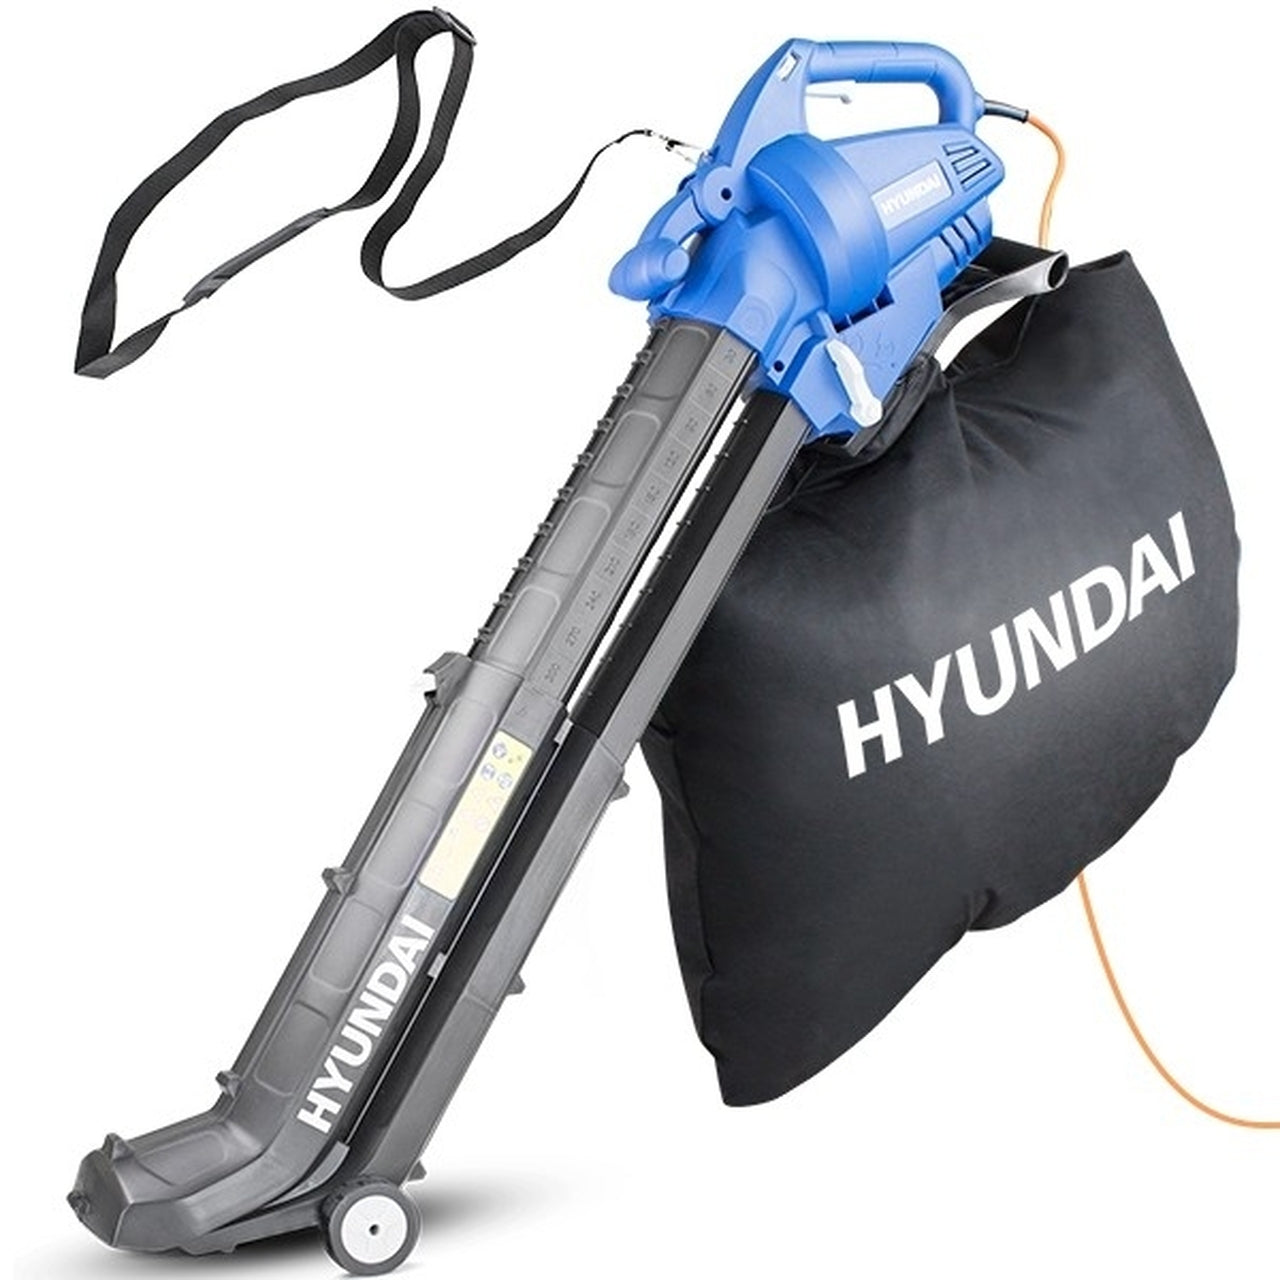 Hyundai HYBV3000E 3-in-1 Electric Leaf Blower and Mulcher Garden Vacuum